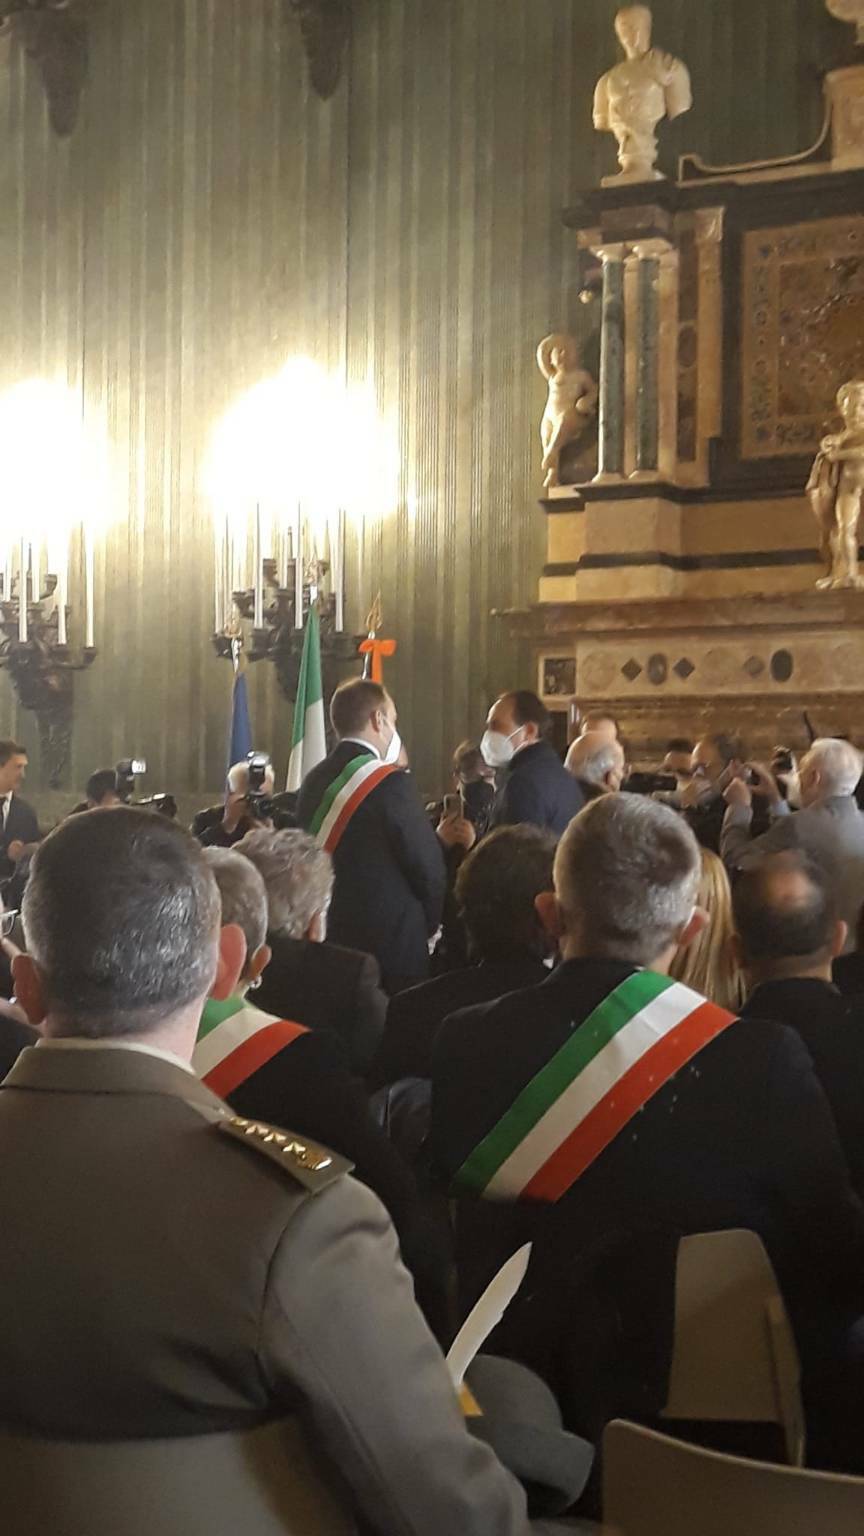 Boves a cerimonia conferimento sigillo Regione Piemonte a Milite Ignoto